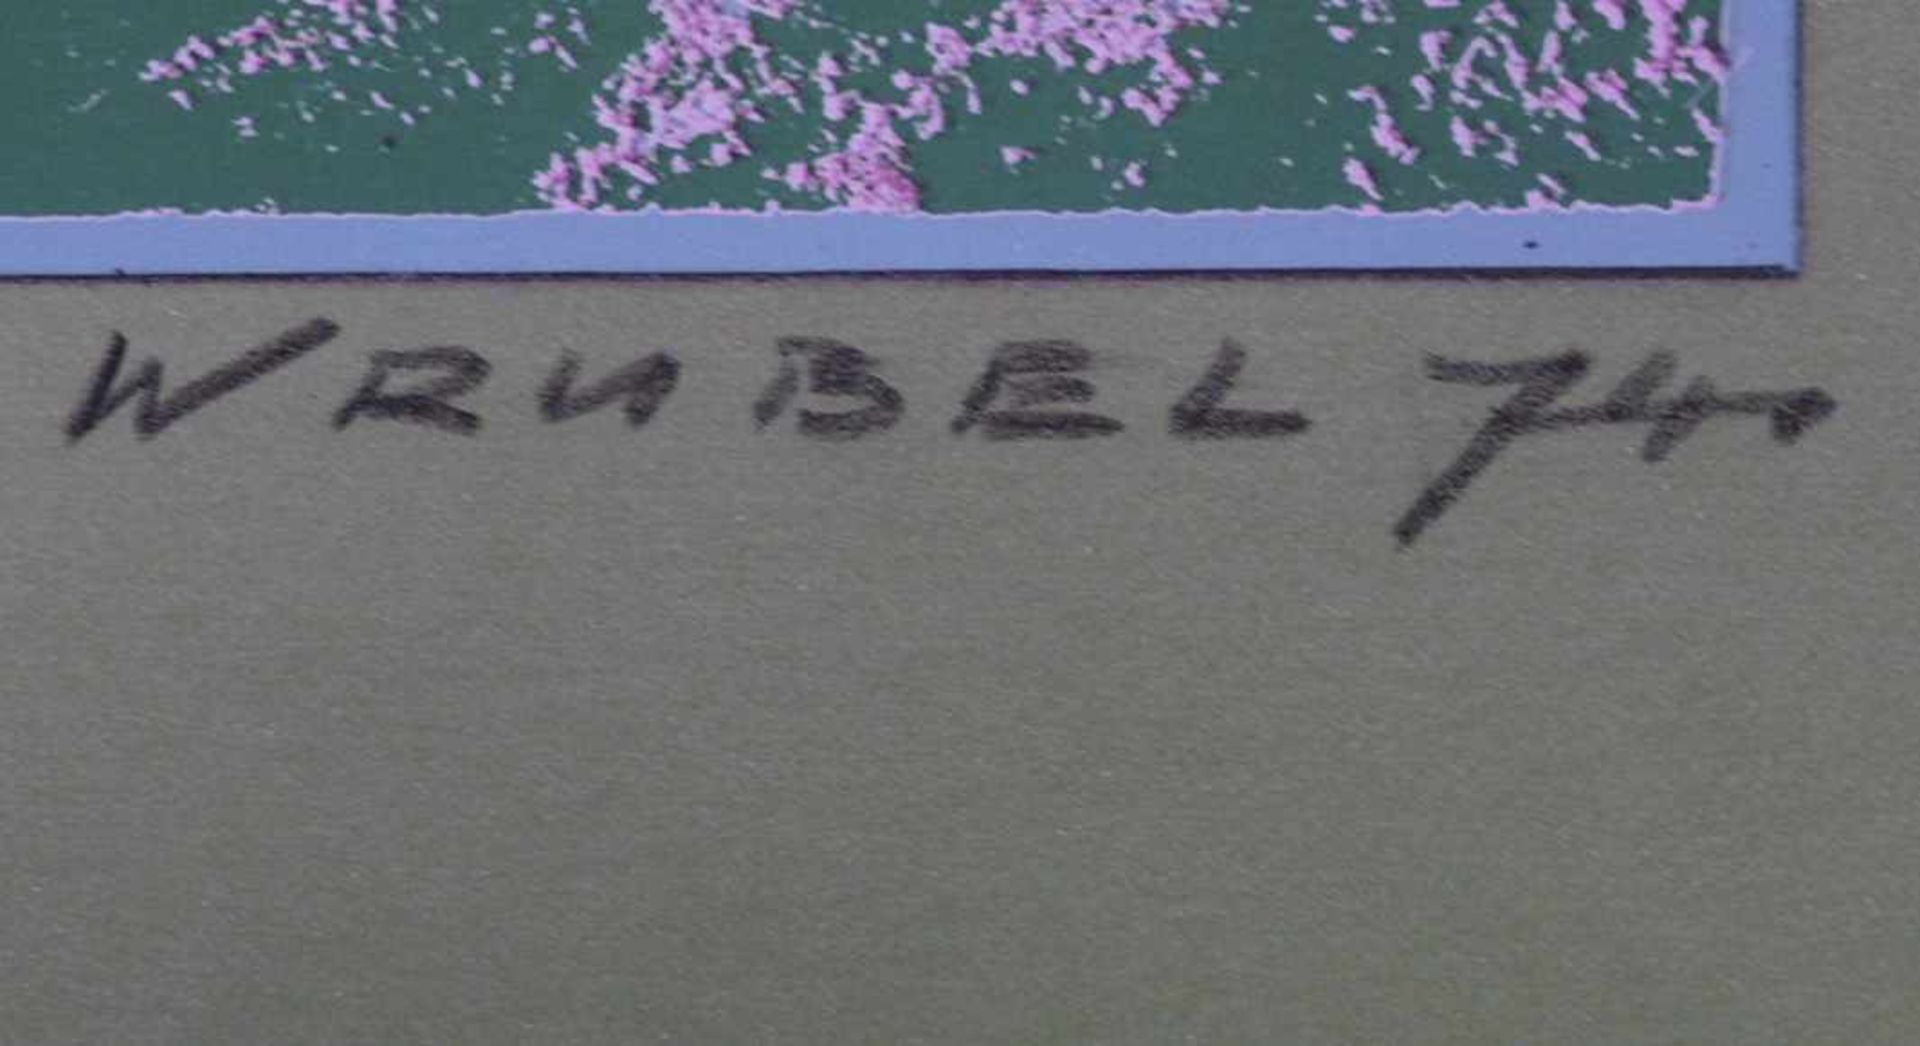 WRUBEL, Arno1913-2005Fünf Arbeiten der Devon-Seriesigniert / datiert (19)74 unten rechts, betitelt - Bild 2 aus 2